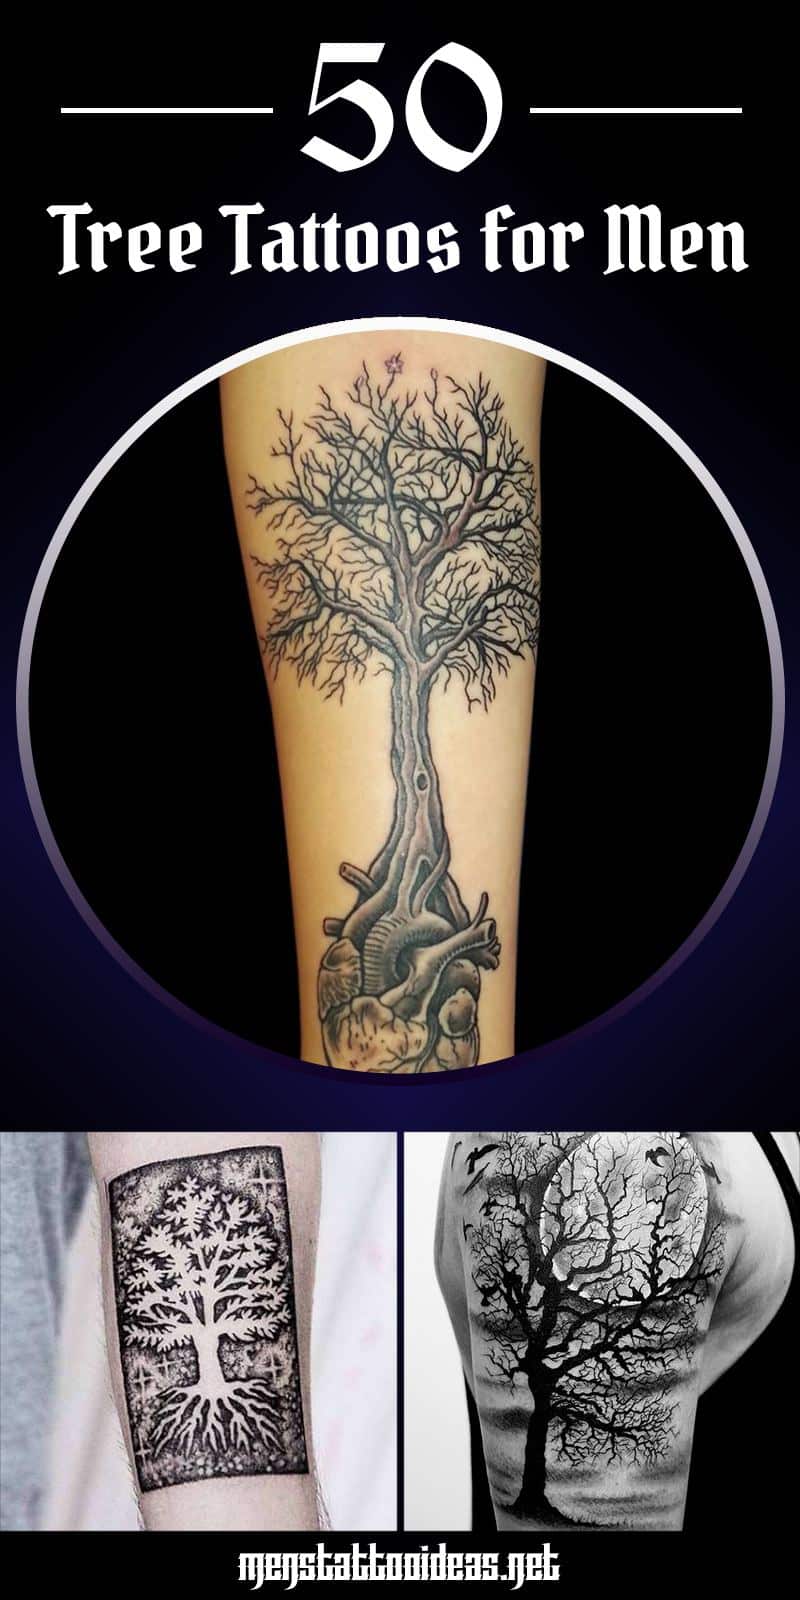 Tree tattoo ideas